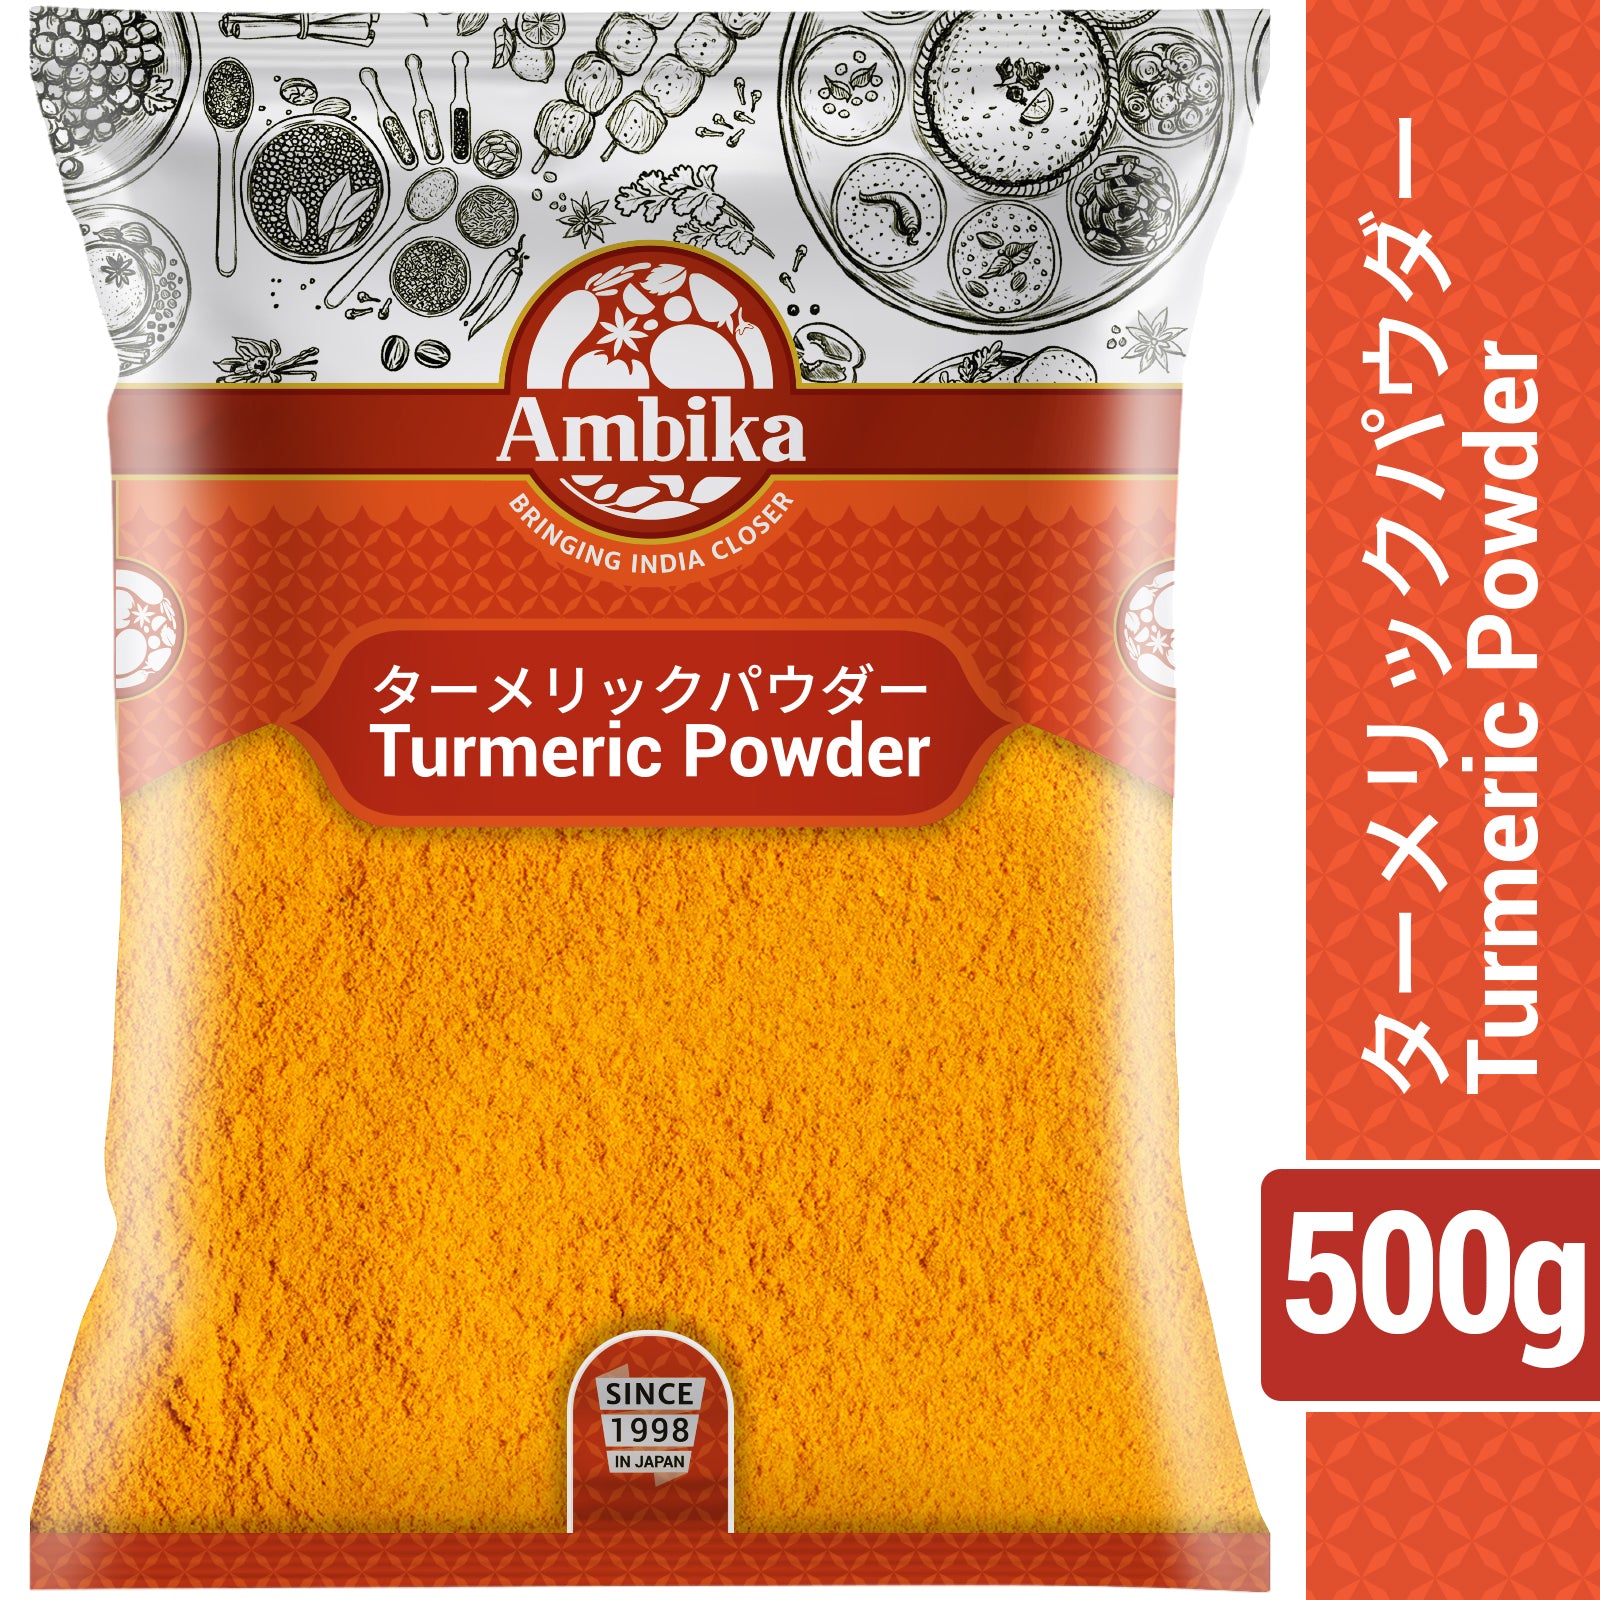 (Ambika) Turmeric Powder 500g